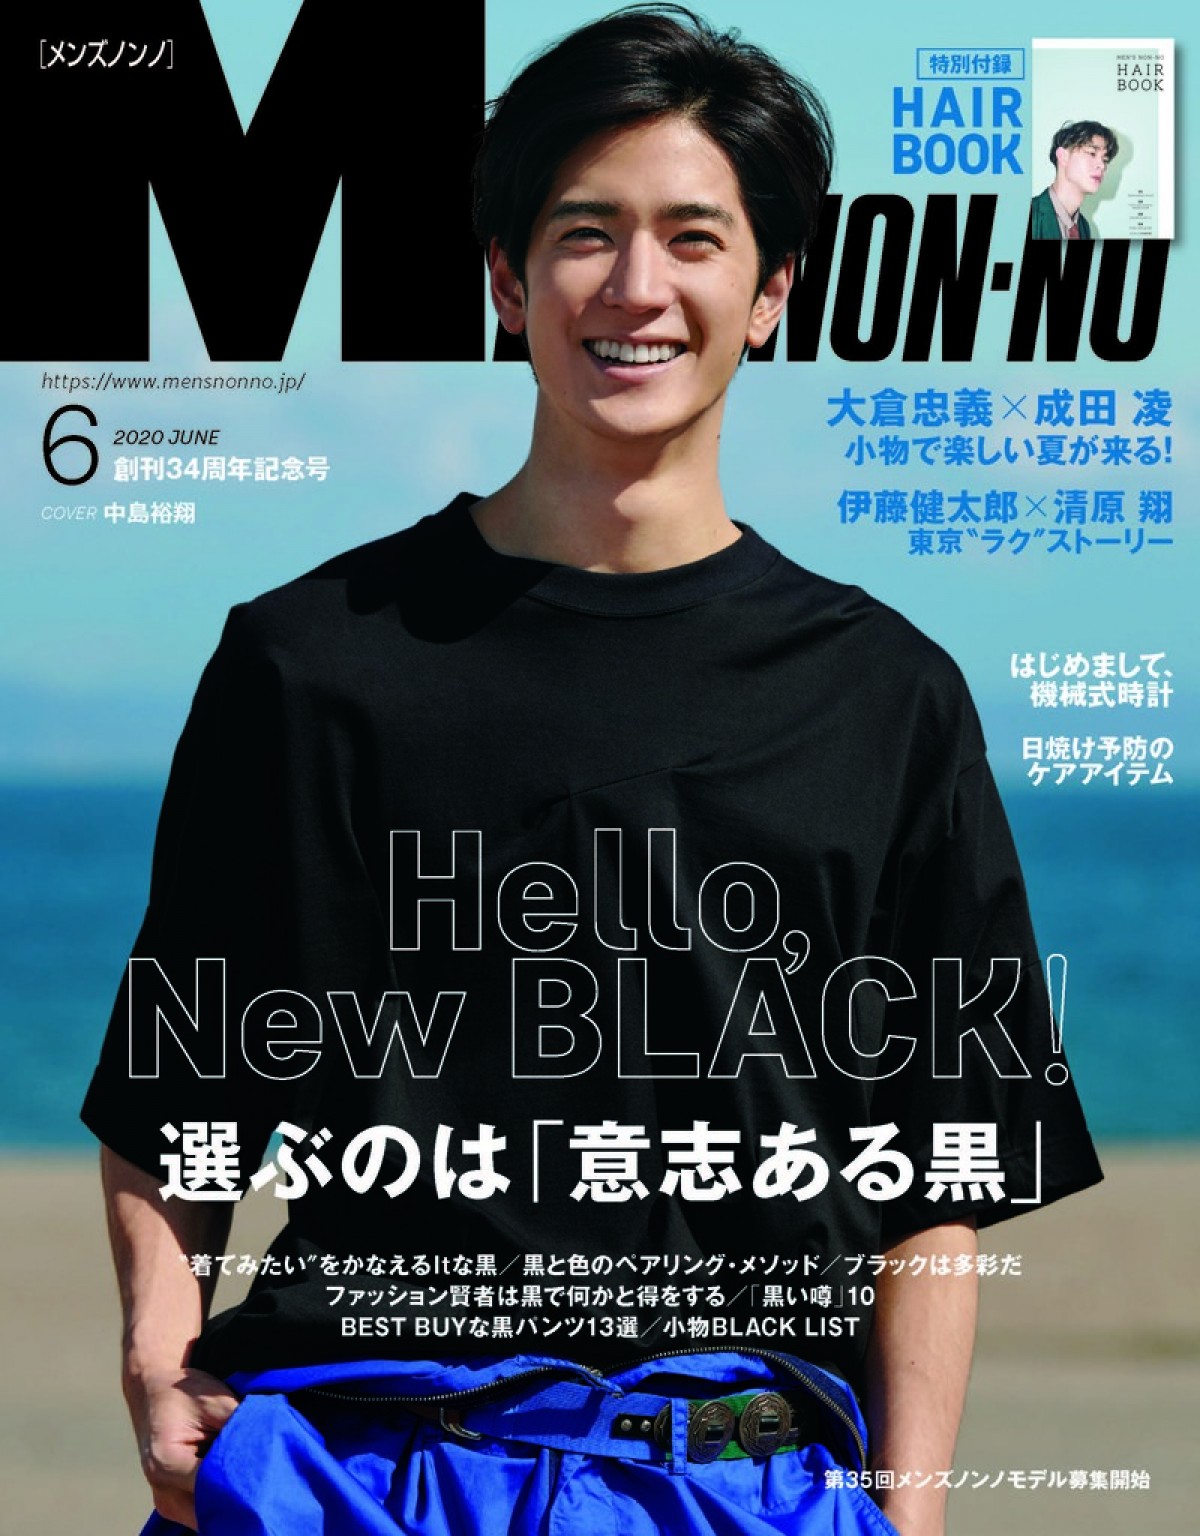 中島裕翔、笑顔で「メンズノンノ」初の単独表紙 「すごく気合が入りました」